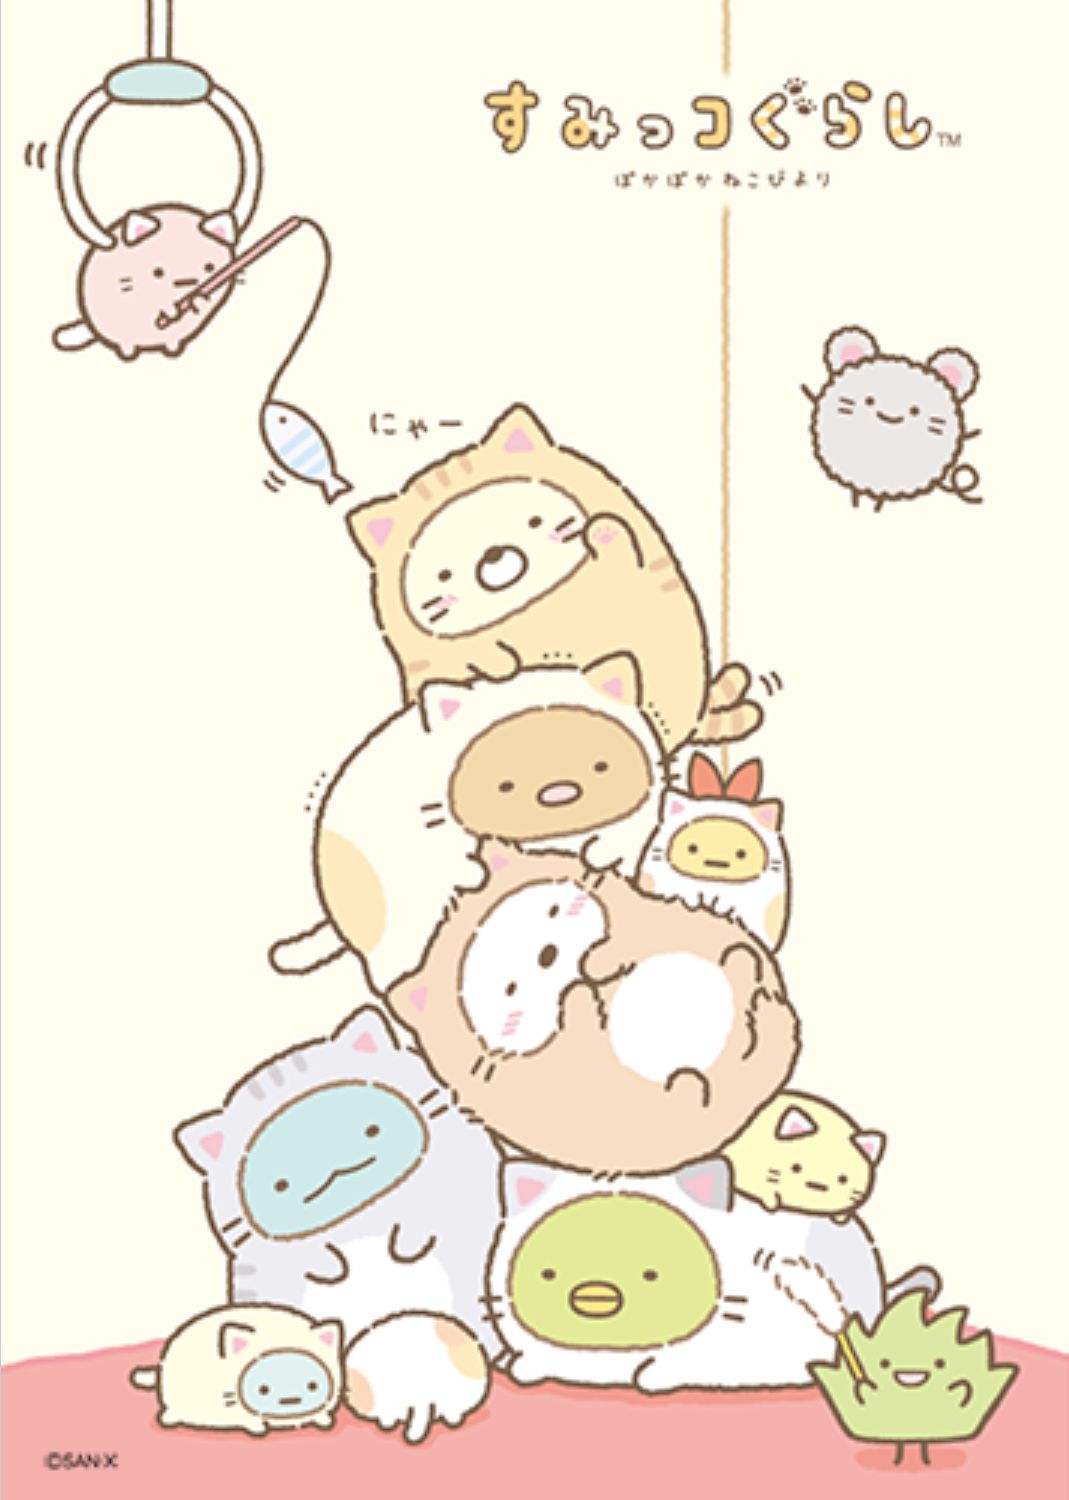 Kawaii sumikko background. Cute animal drawings kawaii, Cute anime wallpaper, Cute kawaii drawings